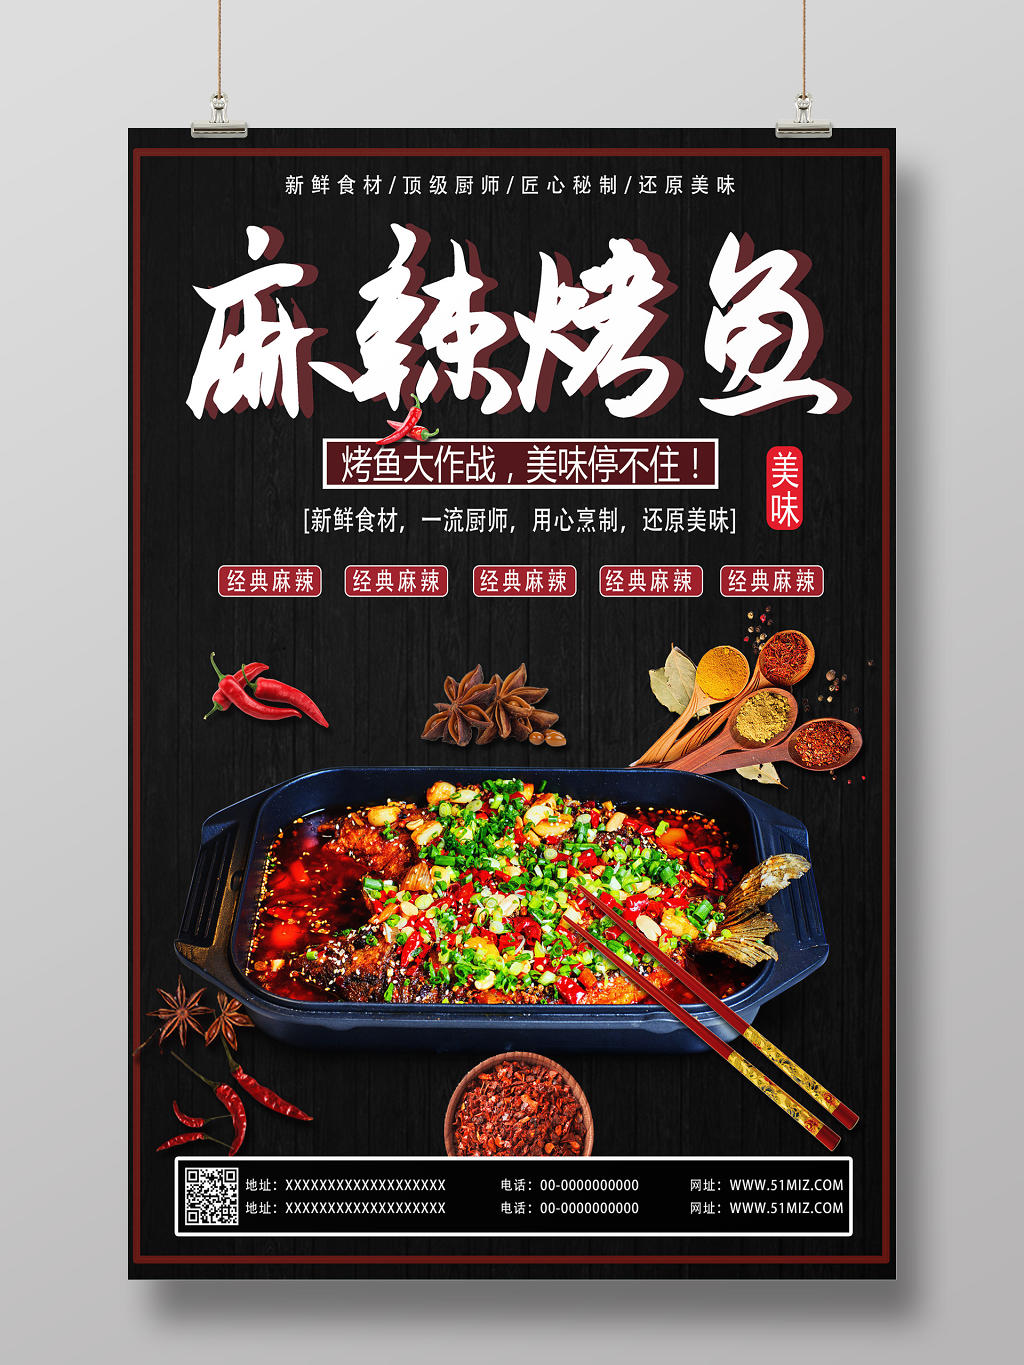 黑色木板麻辣烤鱼美味经典麻辣香料新鲜食材宣传海报